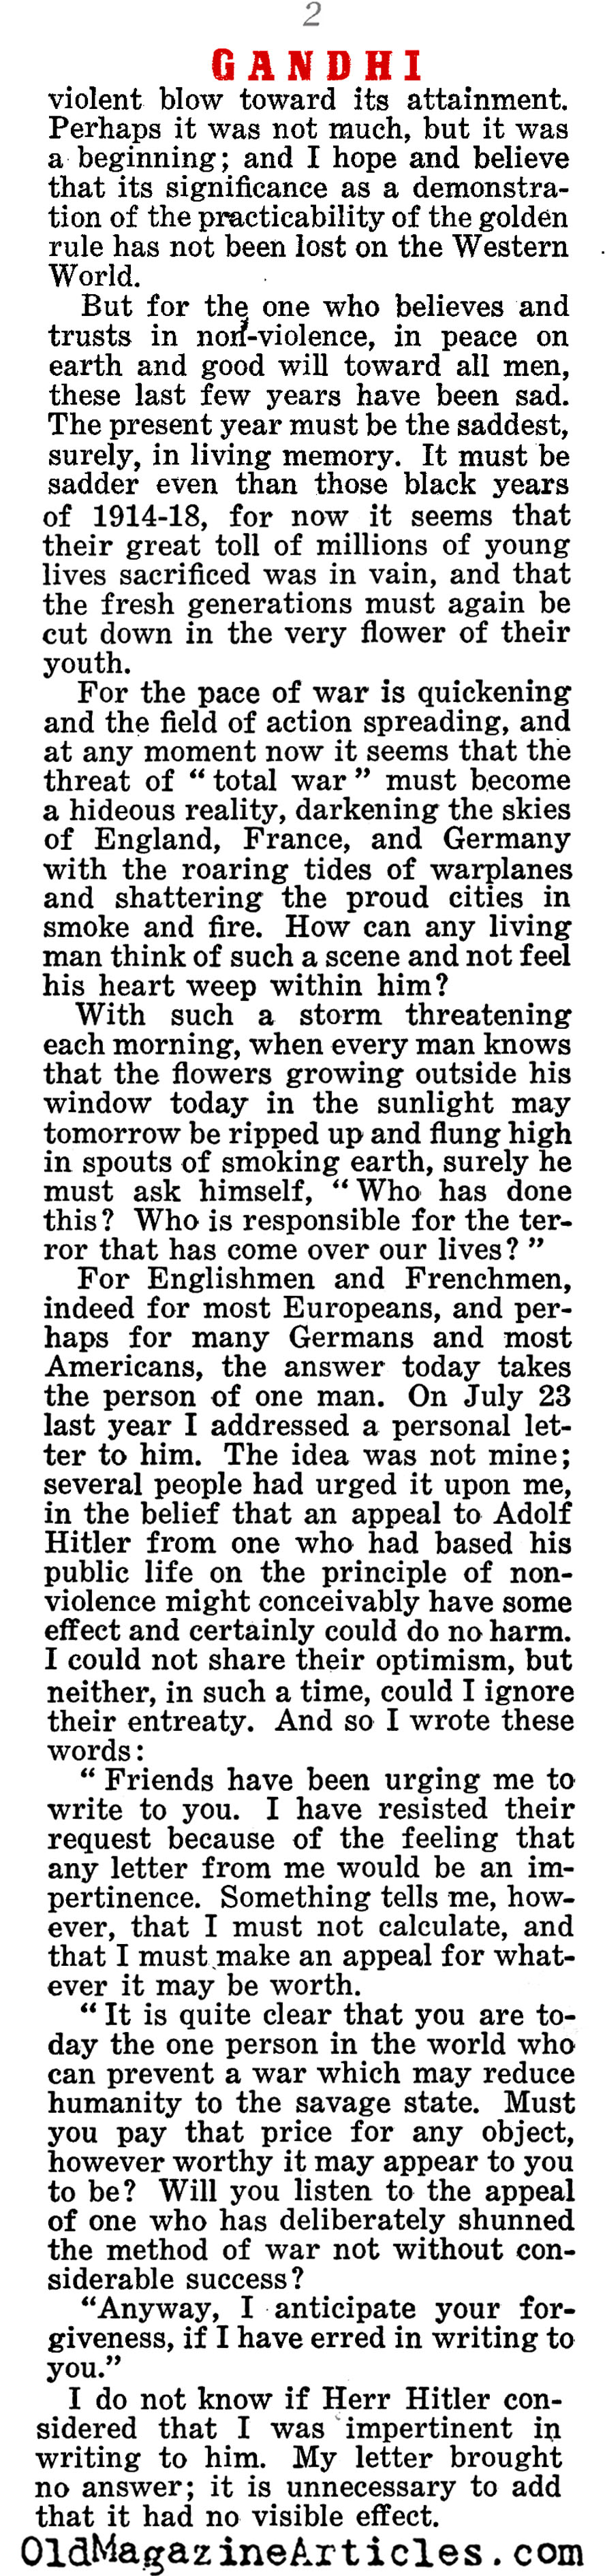 Mahatma Gandhi: ''Why I Cannot Hate Hitler'' (Liberty Magazine, 1940)